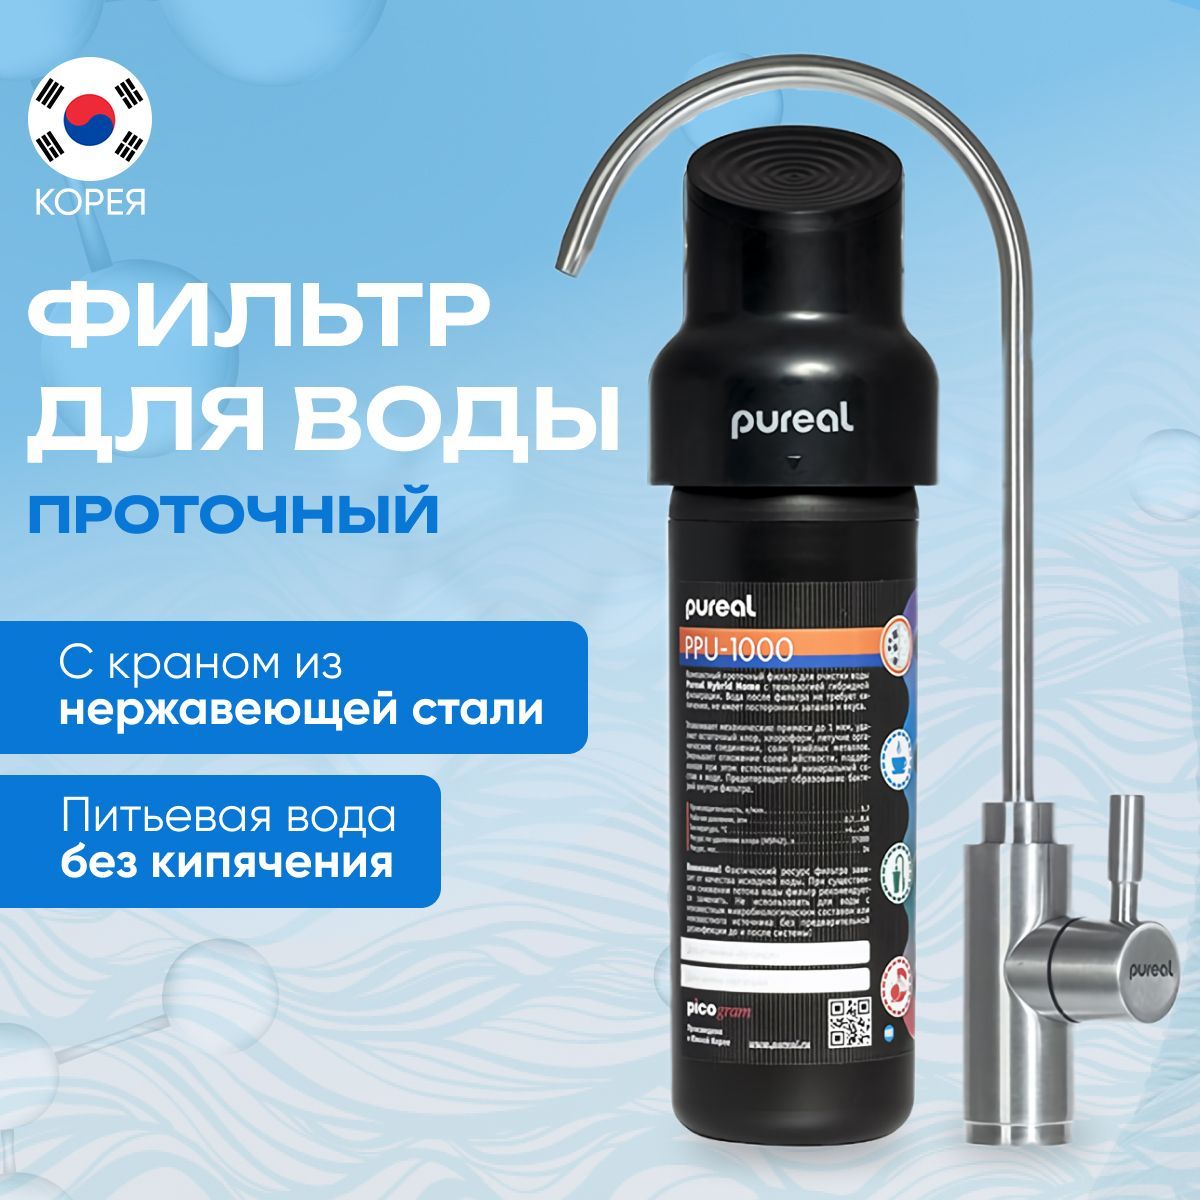 Корейский фильтр. Корейские фильтры для воды для душа. Фильтр из корейского. Pureal Hybrid фильтр для воды PPU-1000 цены. Корейский фильтр для воды